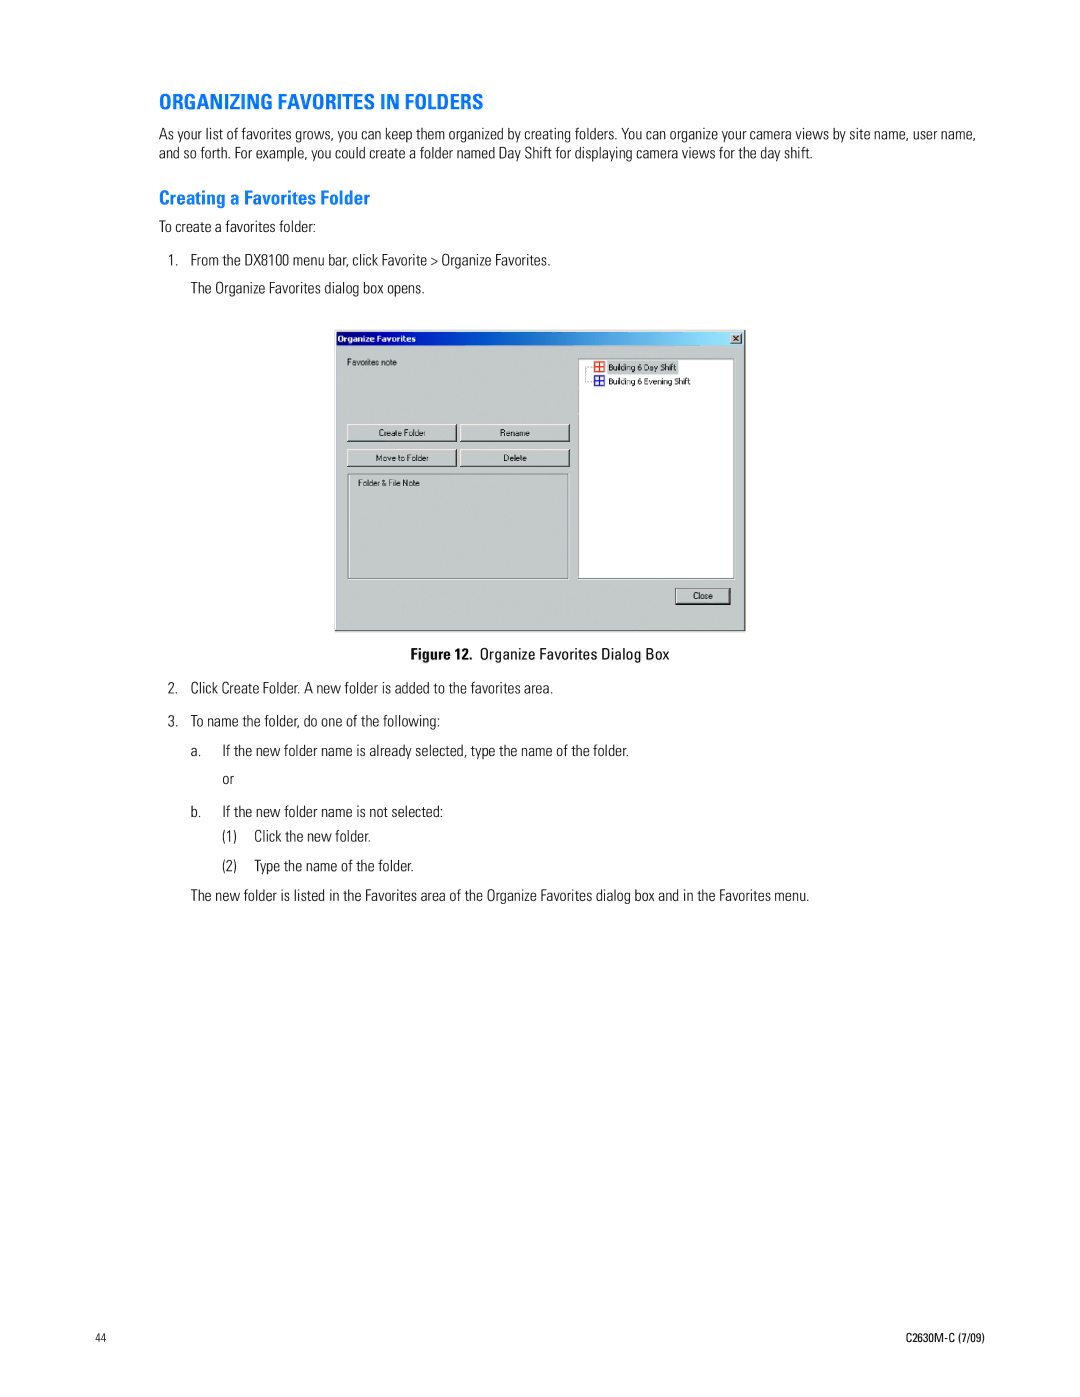 Pelco dx8100 manual Organizing Favorites in Folders, Creating a Favorites Folder, To create a favorites folder 